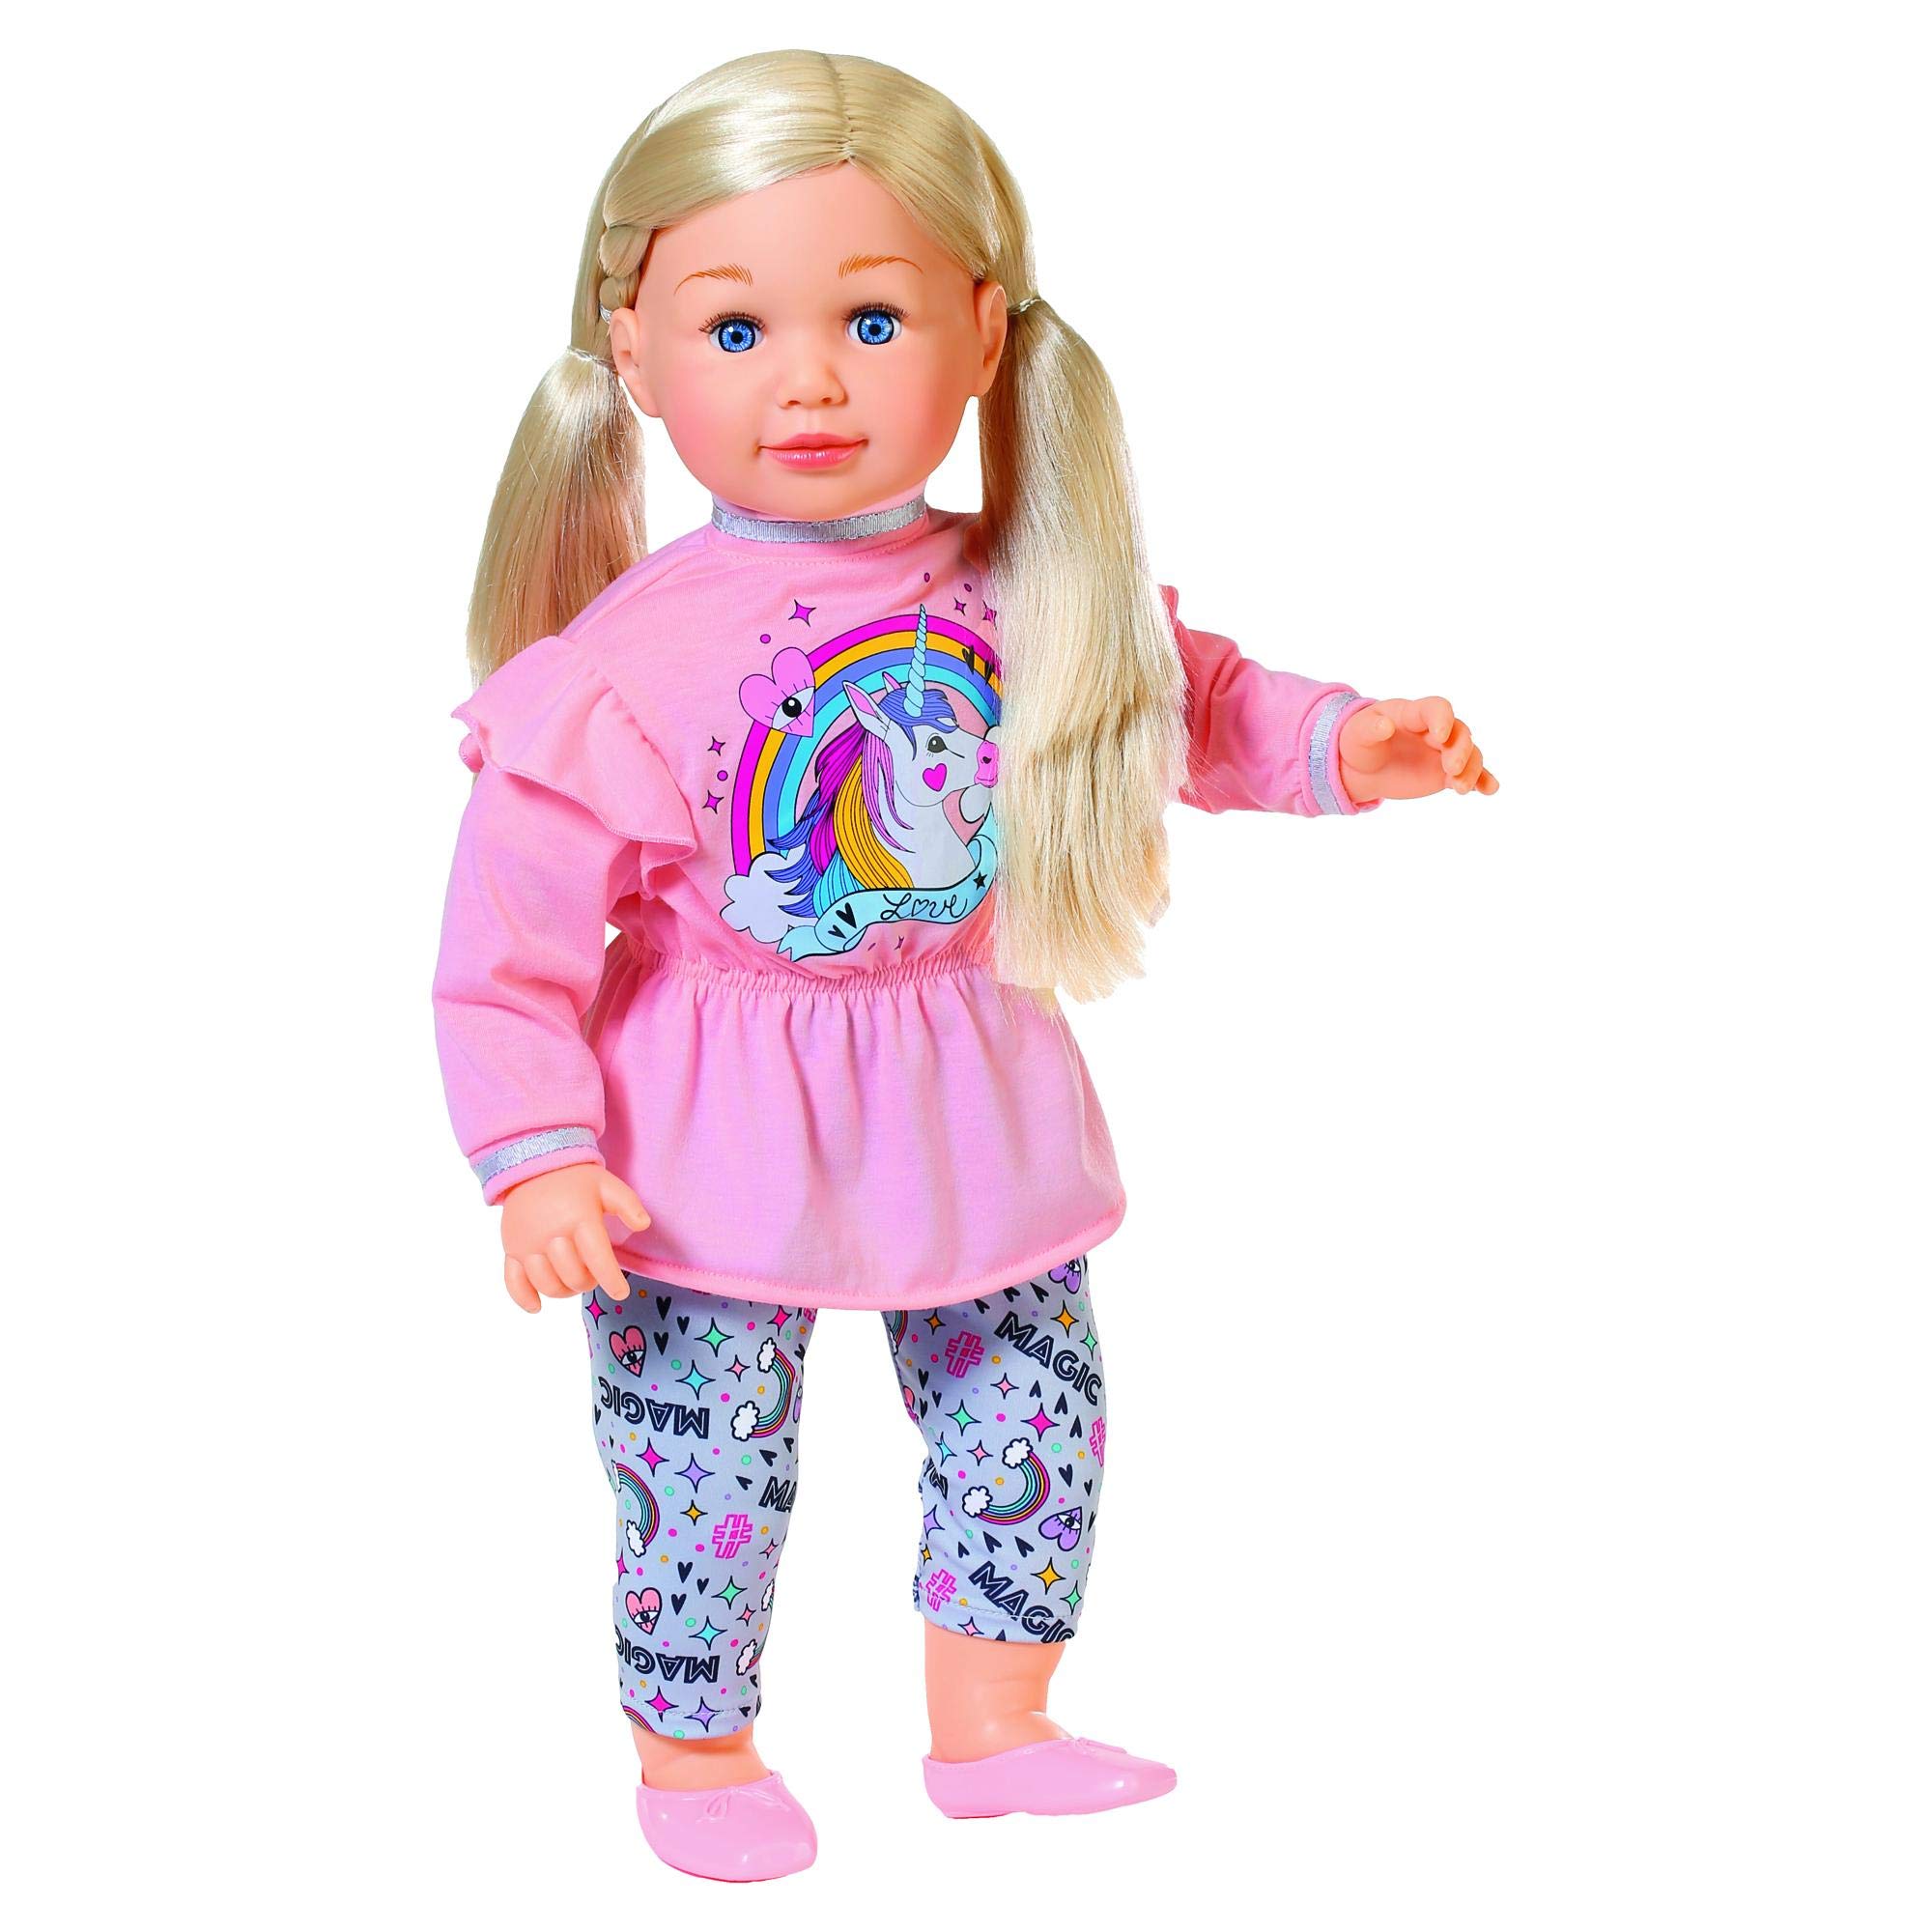 Sally Puppe mit weichem Körper und langen Haaren, 63 cm groß, 877654 Zapf Creation